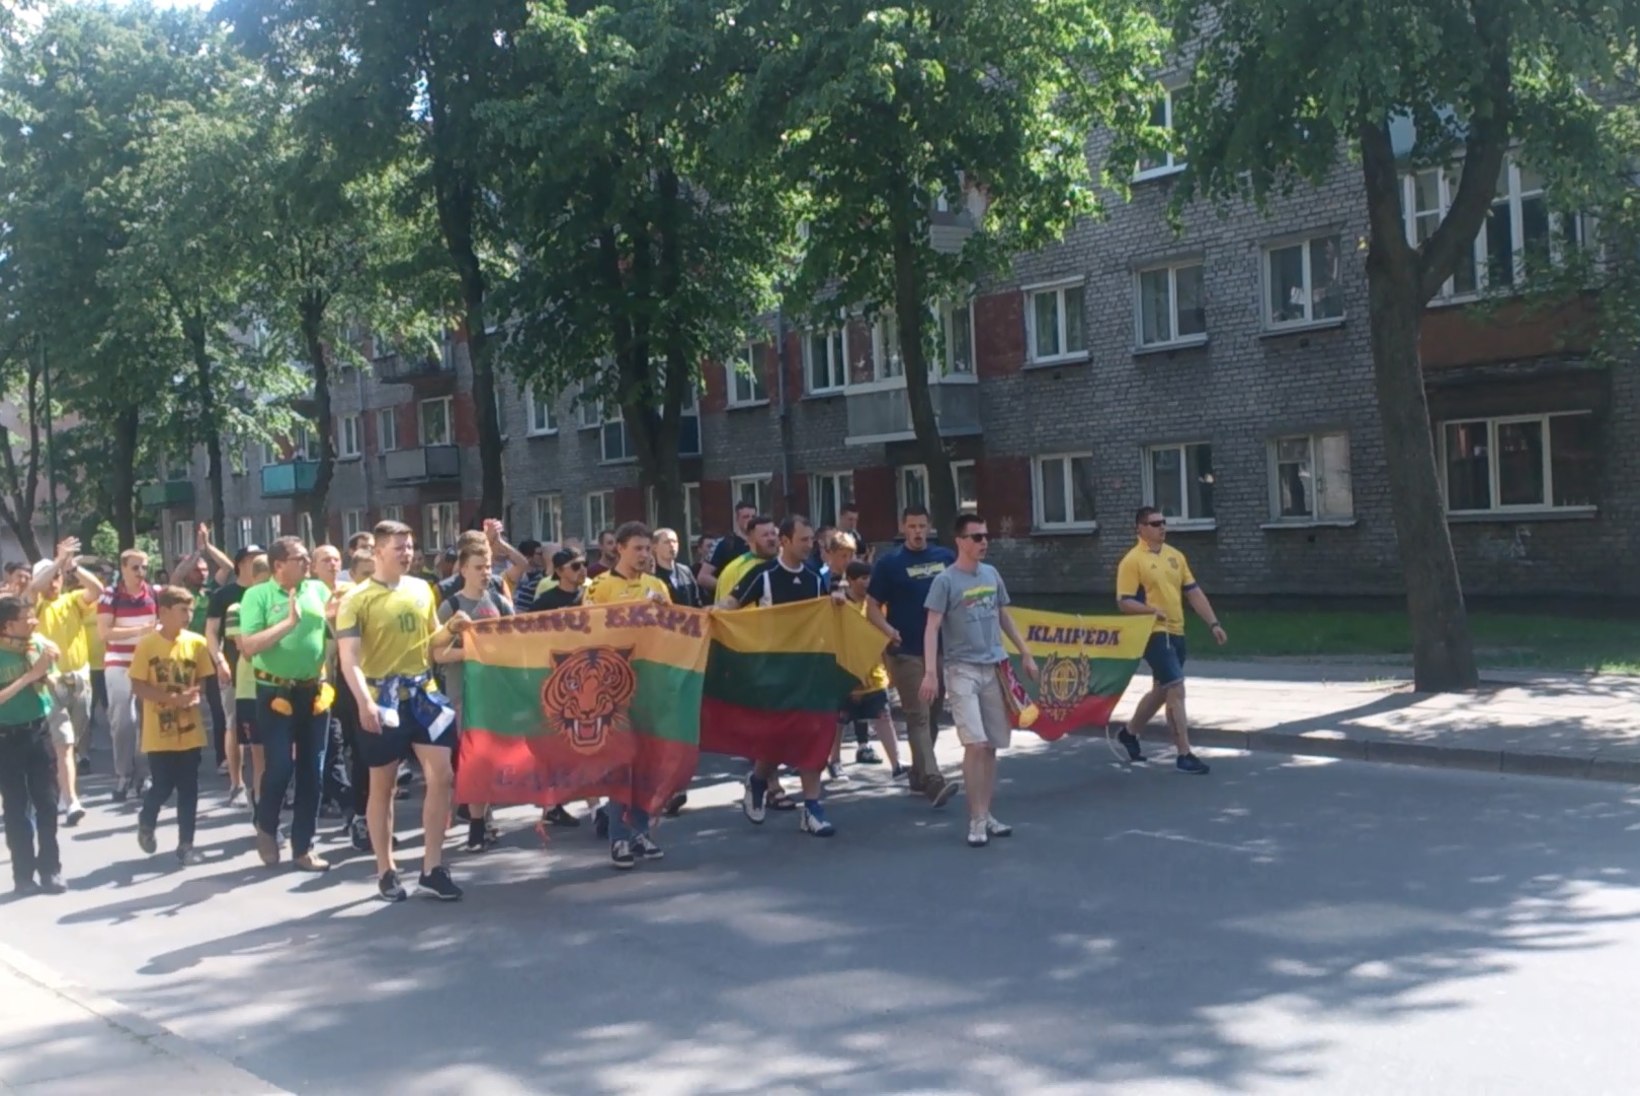 ÕHTULEHE VIDEO | Leedu fännid marssisid staadionile võimsa laulukõmina saatel